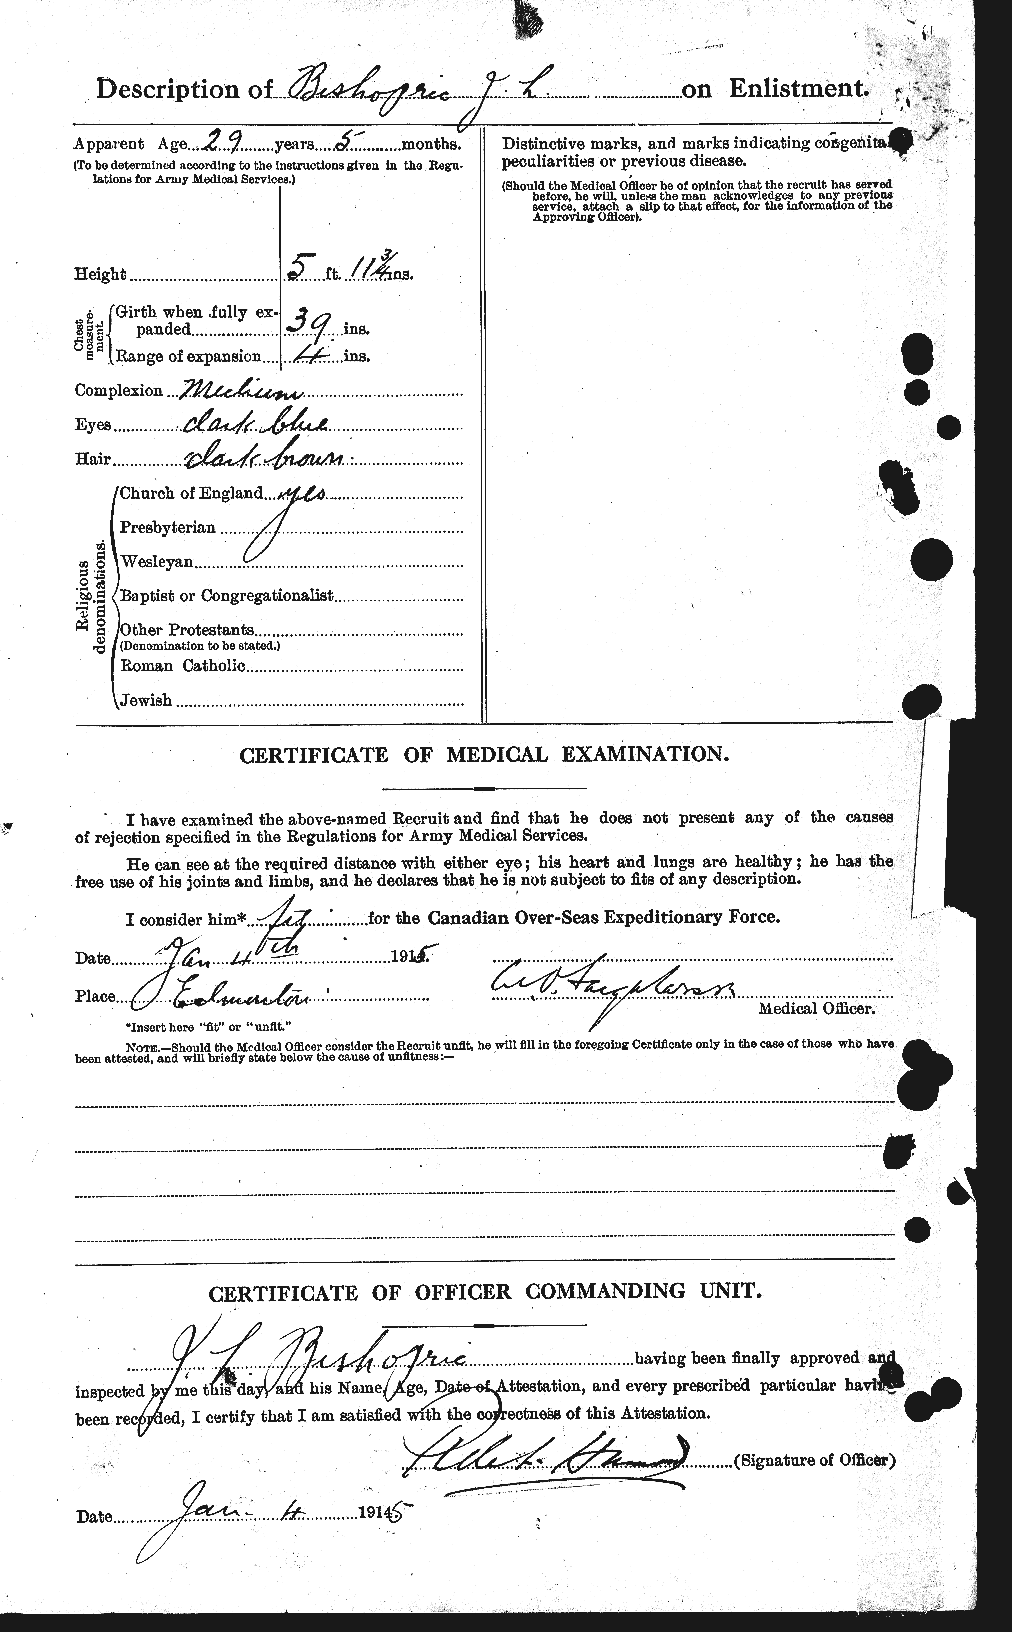 Dossiers du Personnel de la Première Guerre mondiale - CEC 245661b